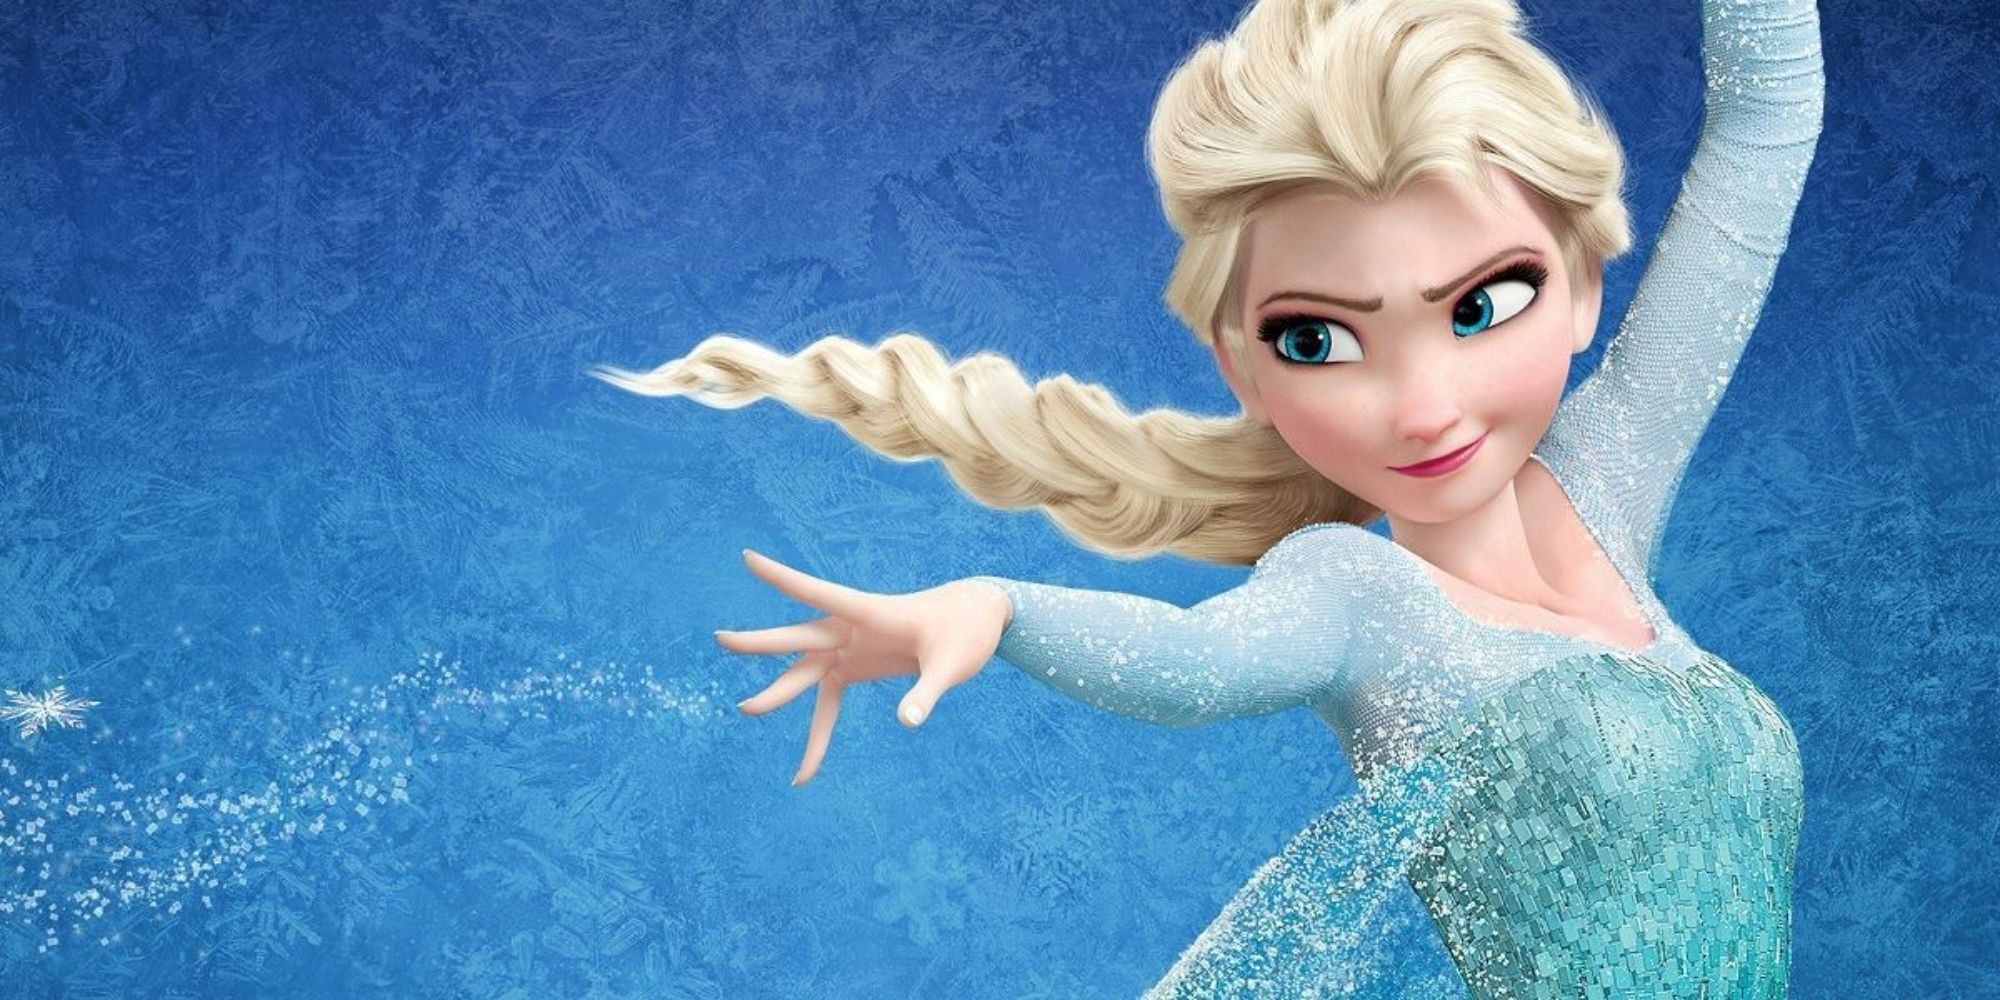 Confirmed Details on Disney's 'Frozen 3' •